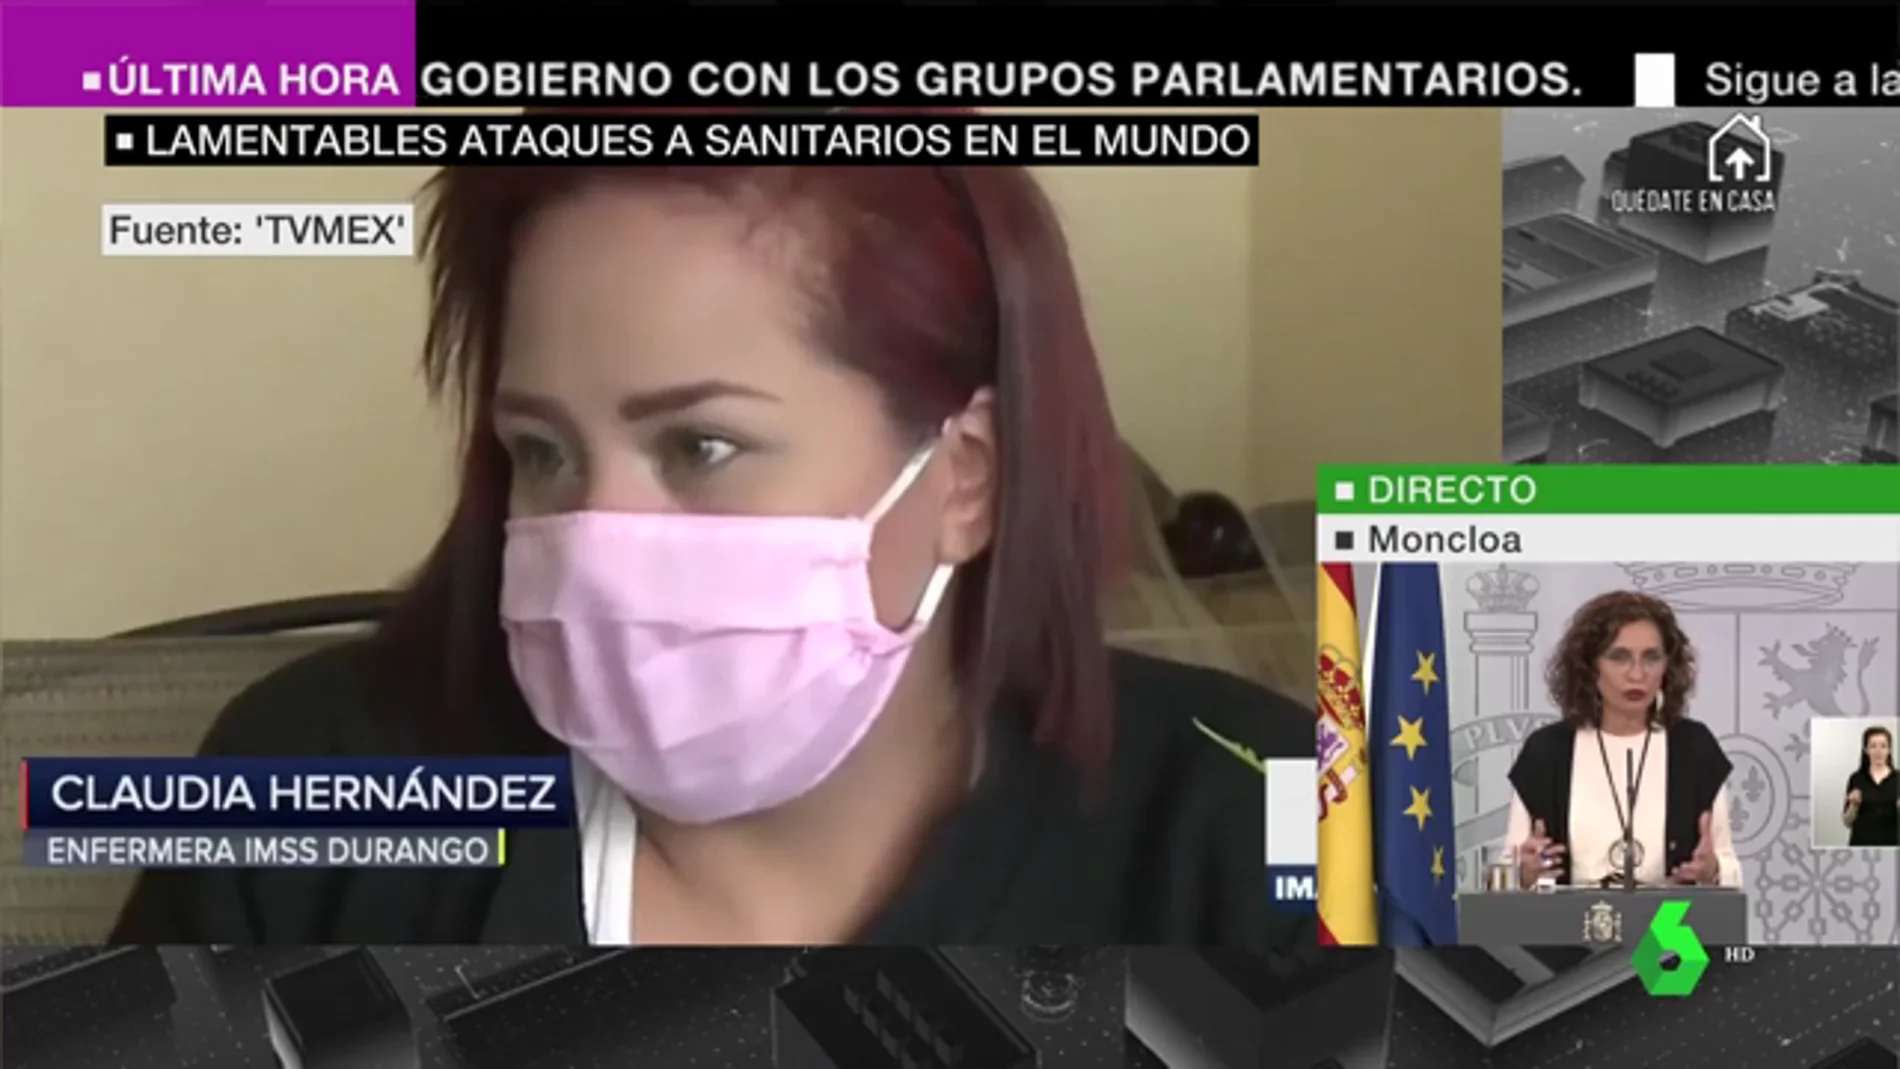 "Muerto el perro se acabó la rabia": la impactante agresión a punta de pistola a una sanitaria mexicana en plena pandemia de coronavirus